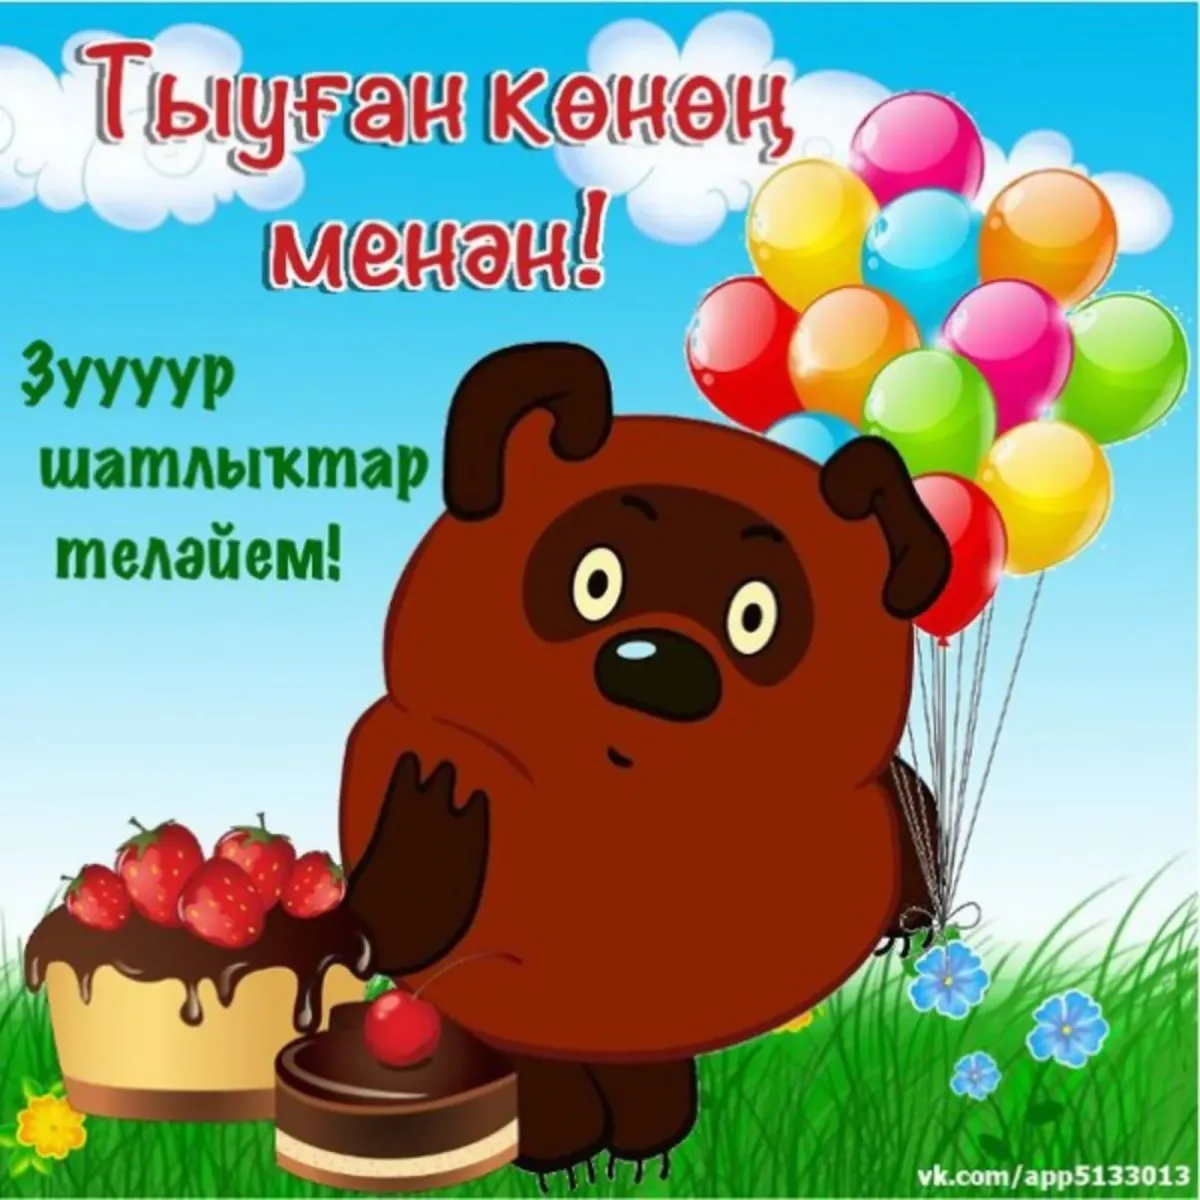 Поздравление на башкирском языке маме. Поздравления с днём рождения на башкирском языке. Башкирские пожелания на день рождения. Поздравления с днём рождения мужчине на башкирском языке. Поздравление с юбилеем на башкирском языке.